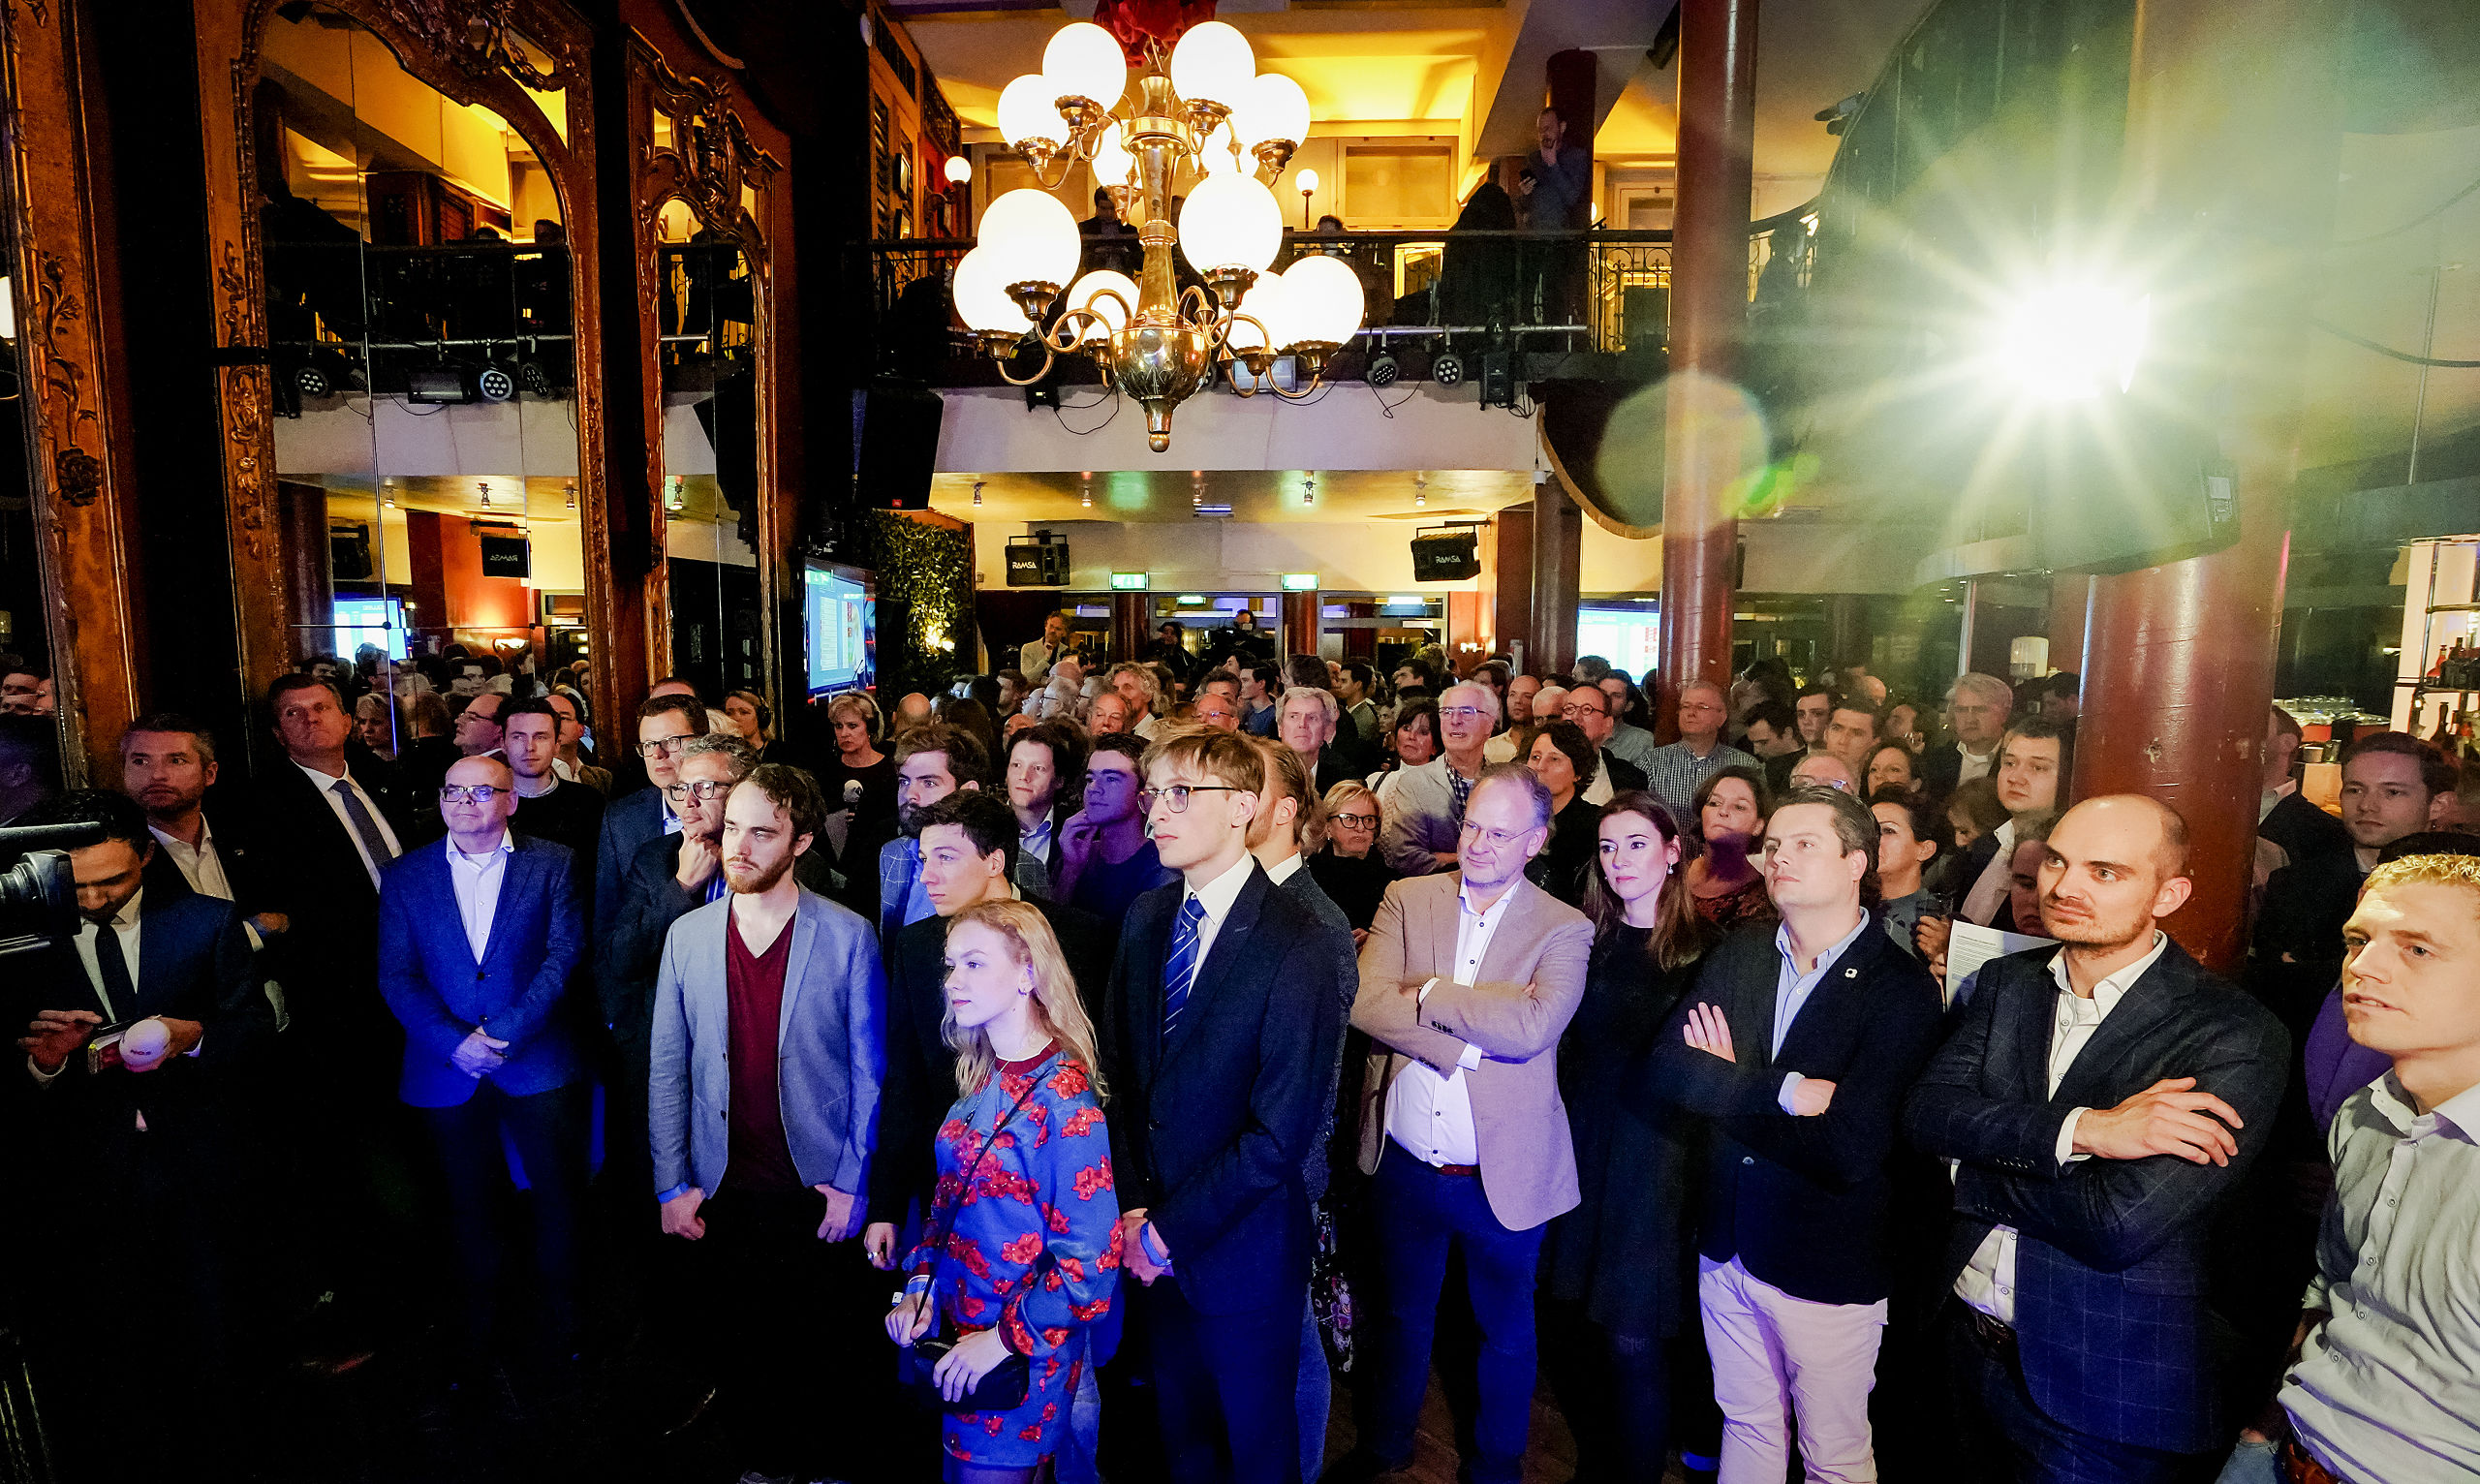 2019-03-20 21:01:22 UTRECHT - Publiek van de VVD tijdens de uitslagenavond van de Provinciale Staten- en Waterschapsverkiezingen. ANP LEX VAN LIESHOUT